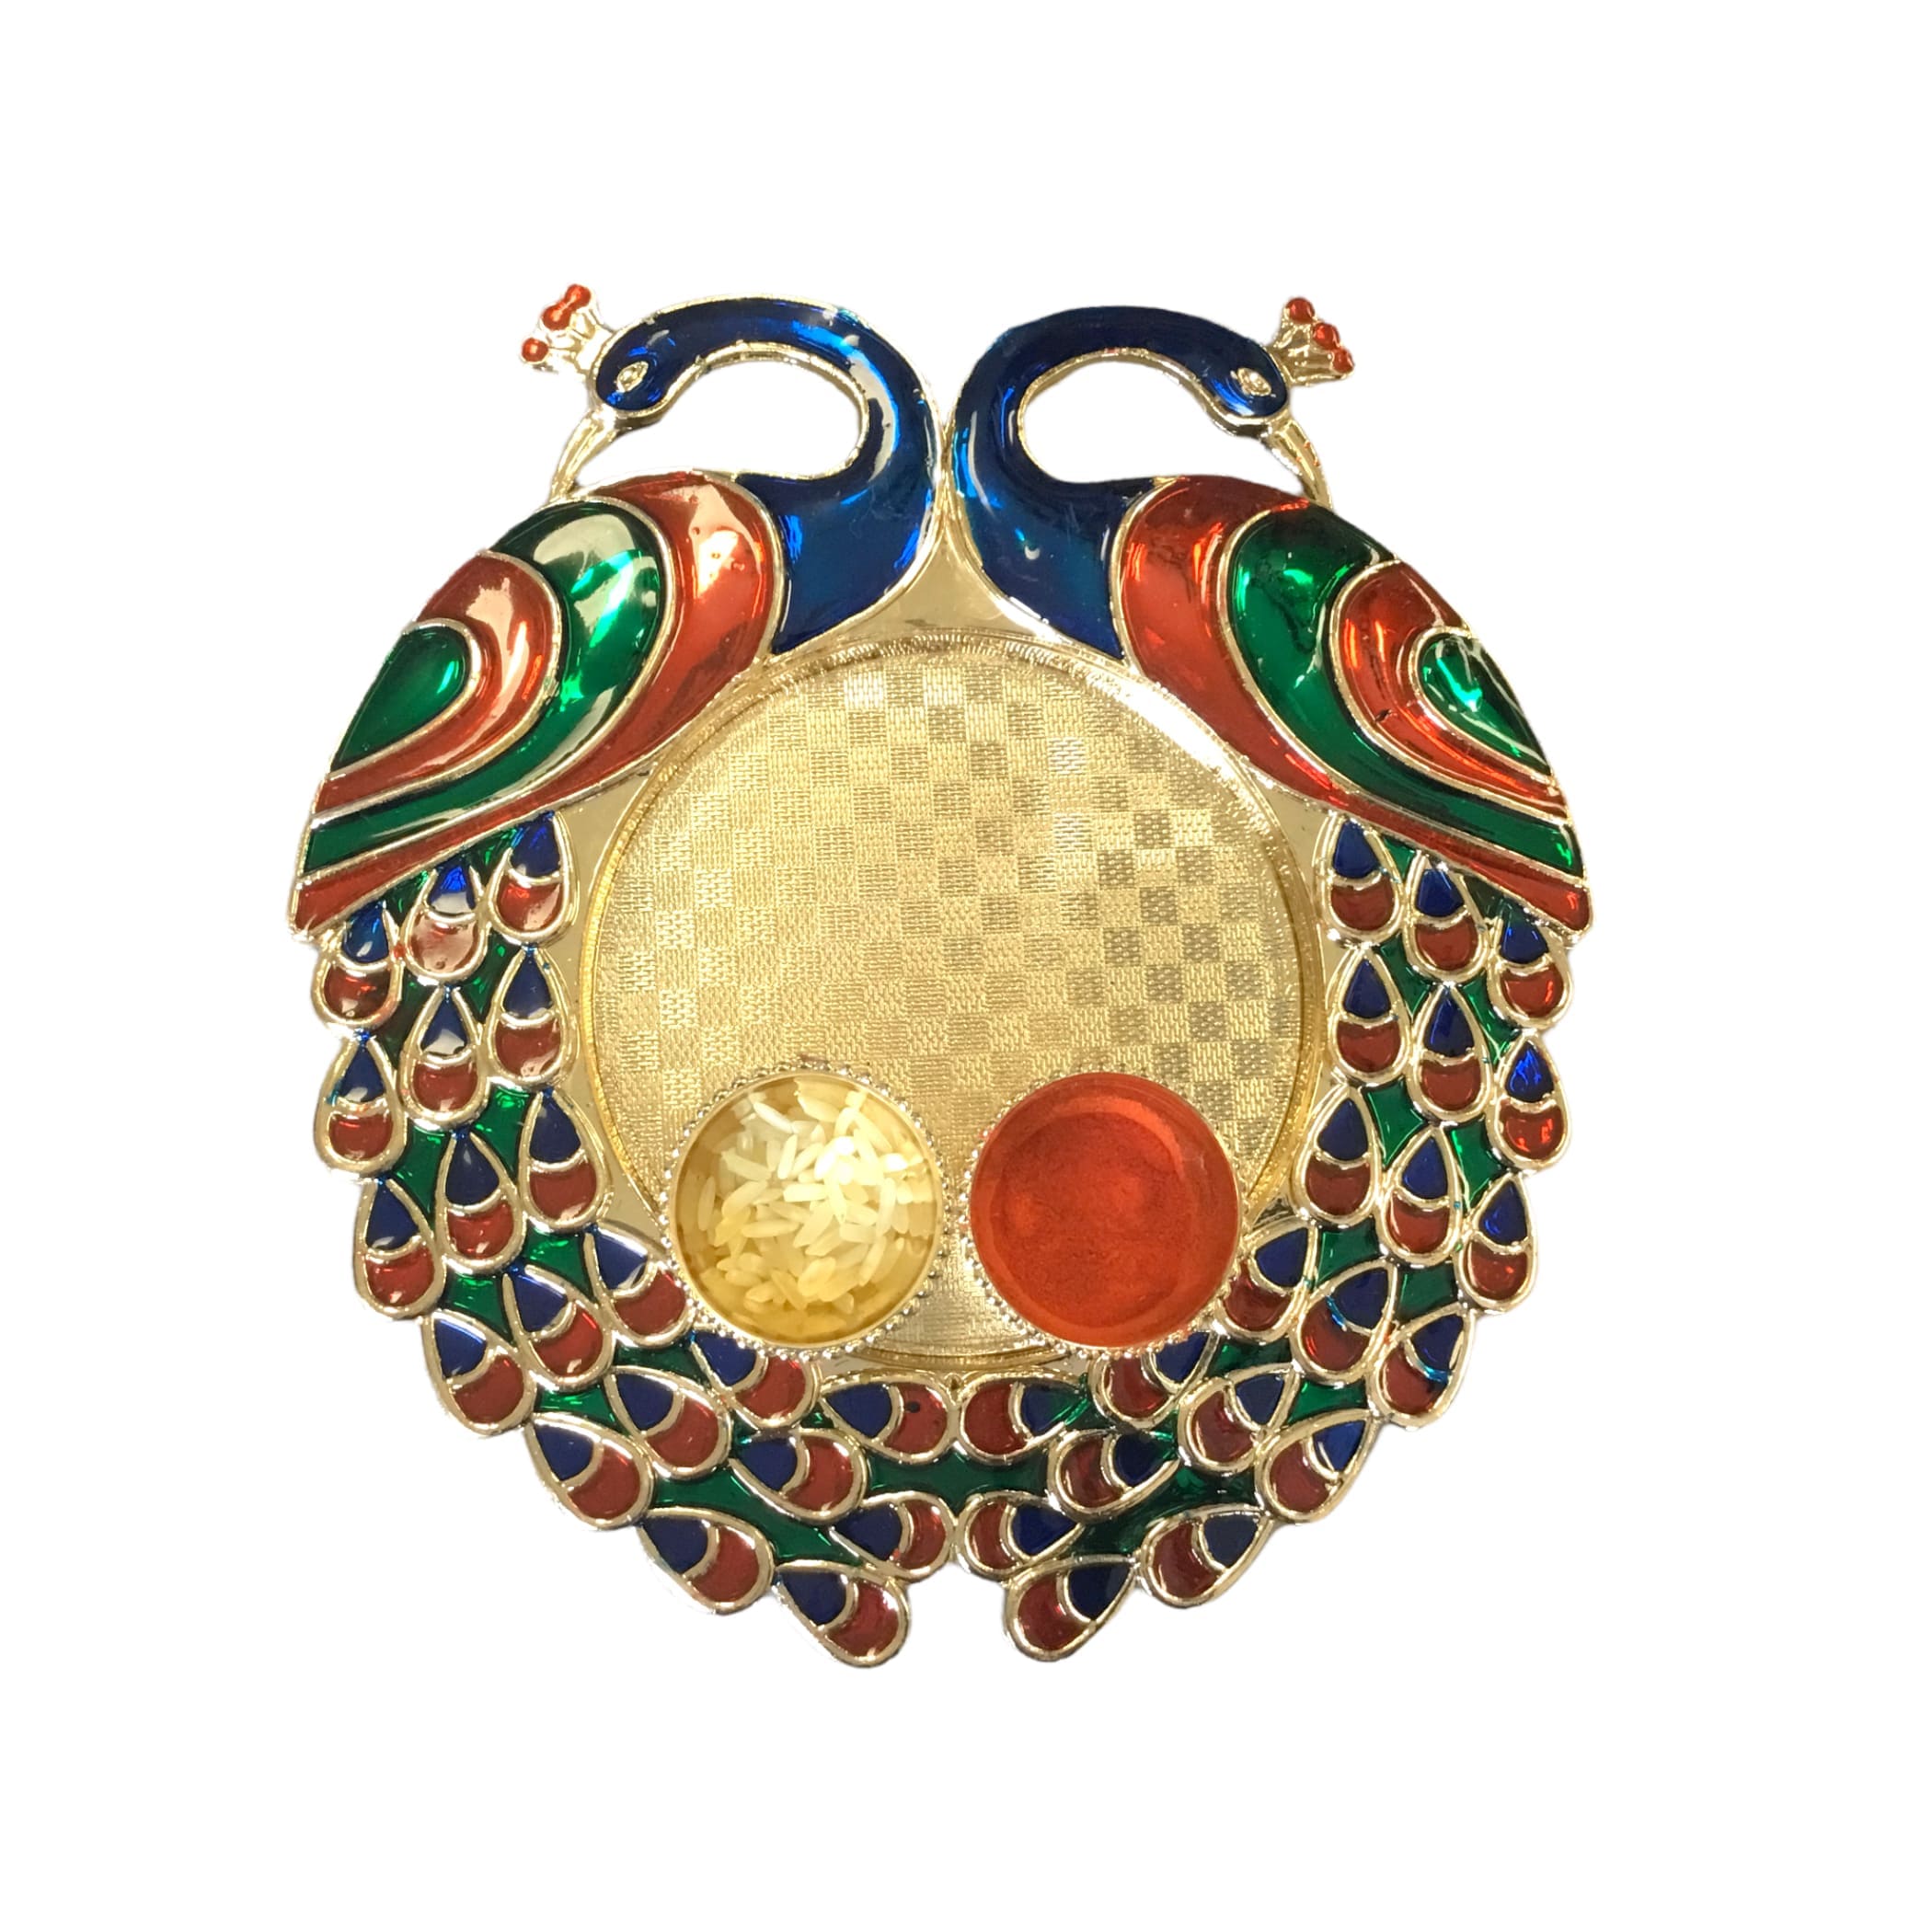 6 ct acrylic peacock haldi kumkum thali holder pooja return